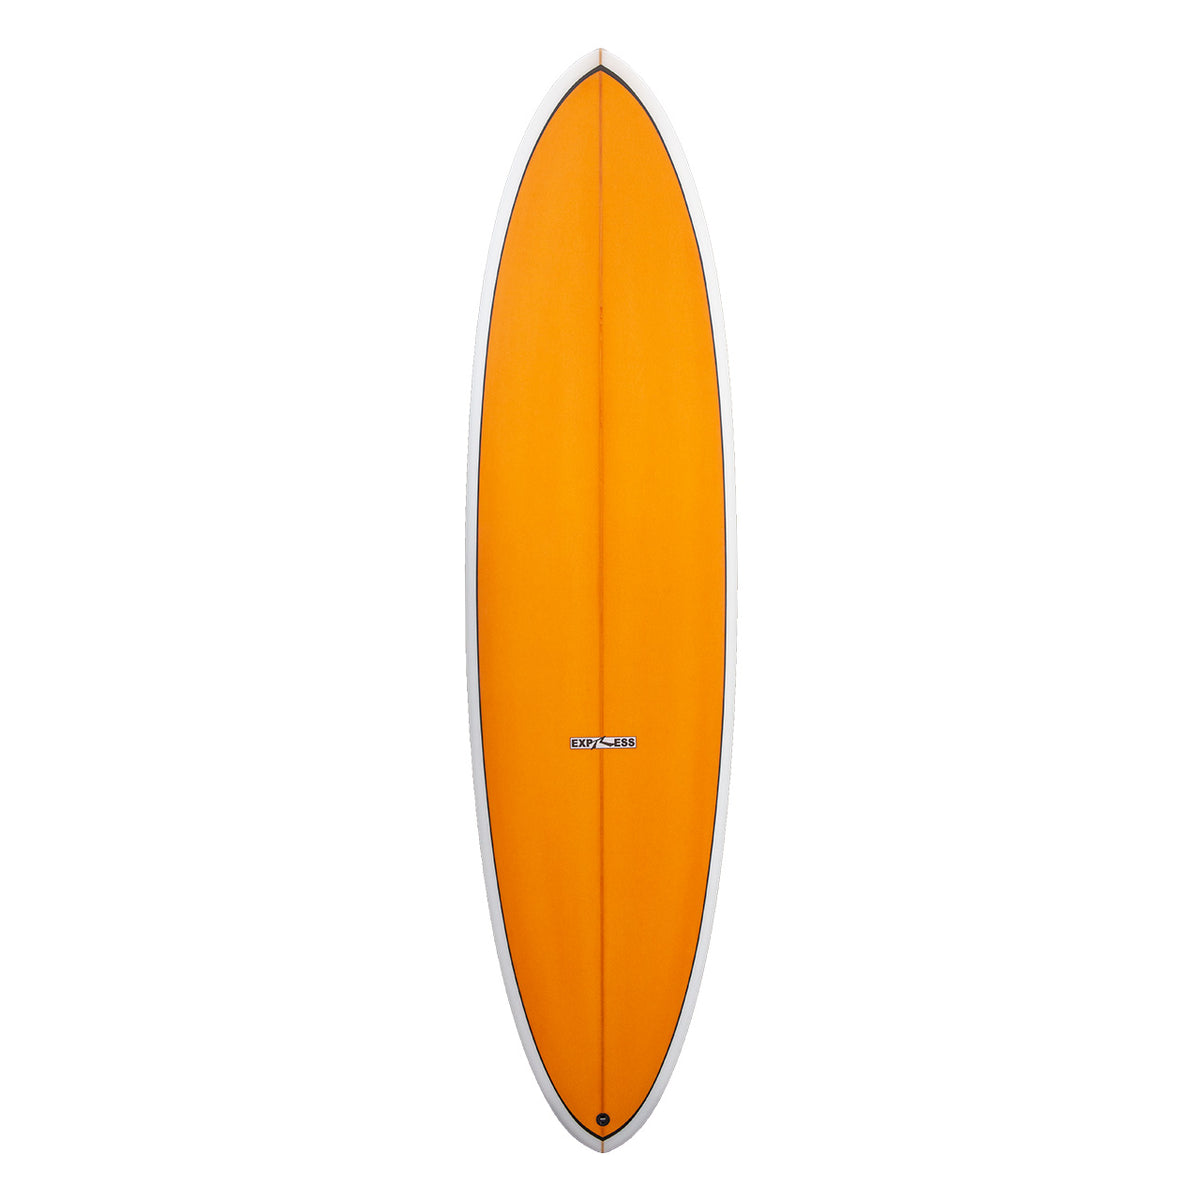 Express Midlength Surfboard - Butterscotch - Deck - Rusty Surfboards 